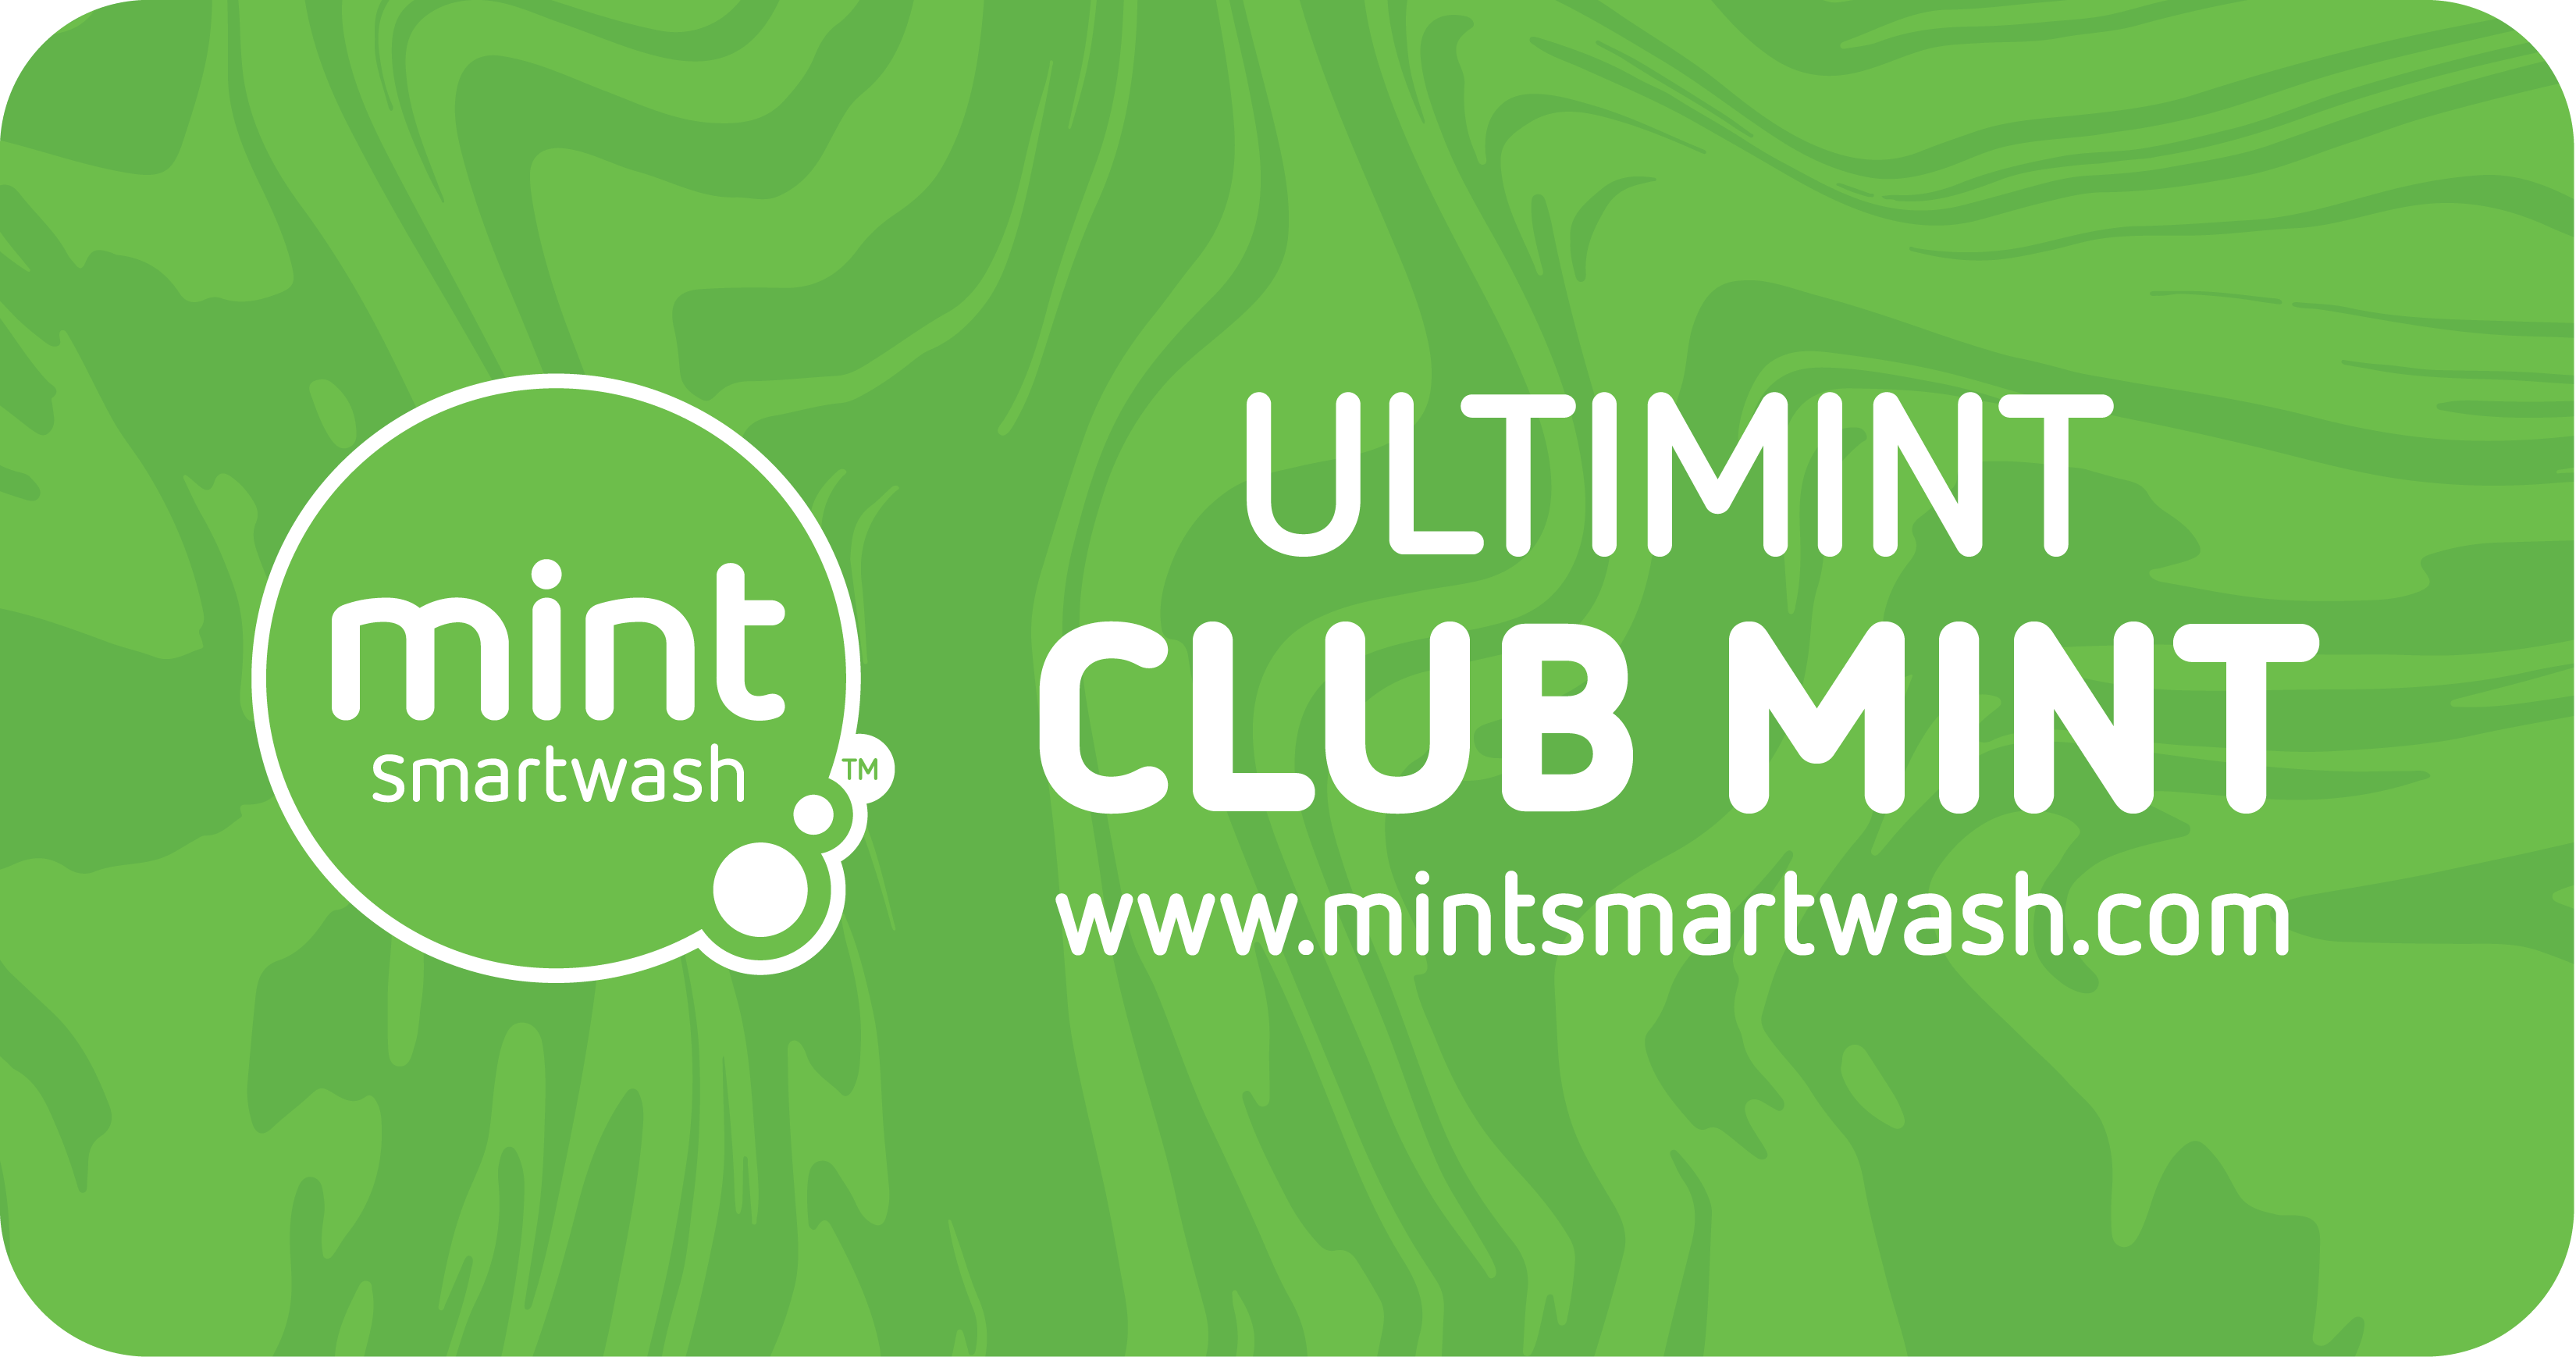 ULTIMINT - Club Mint